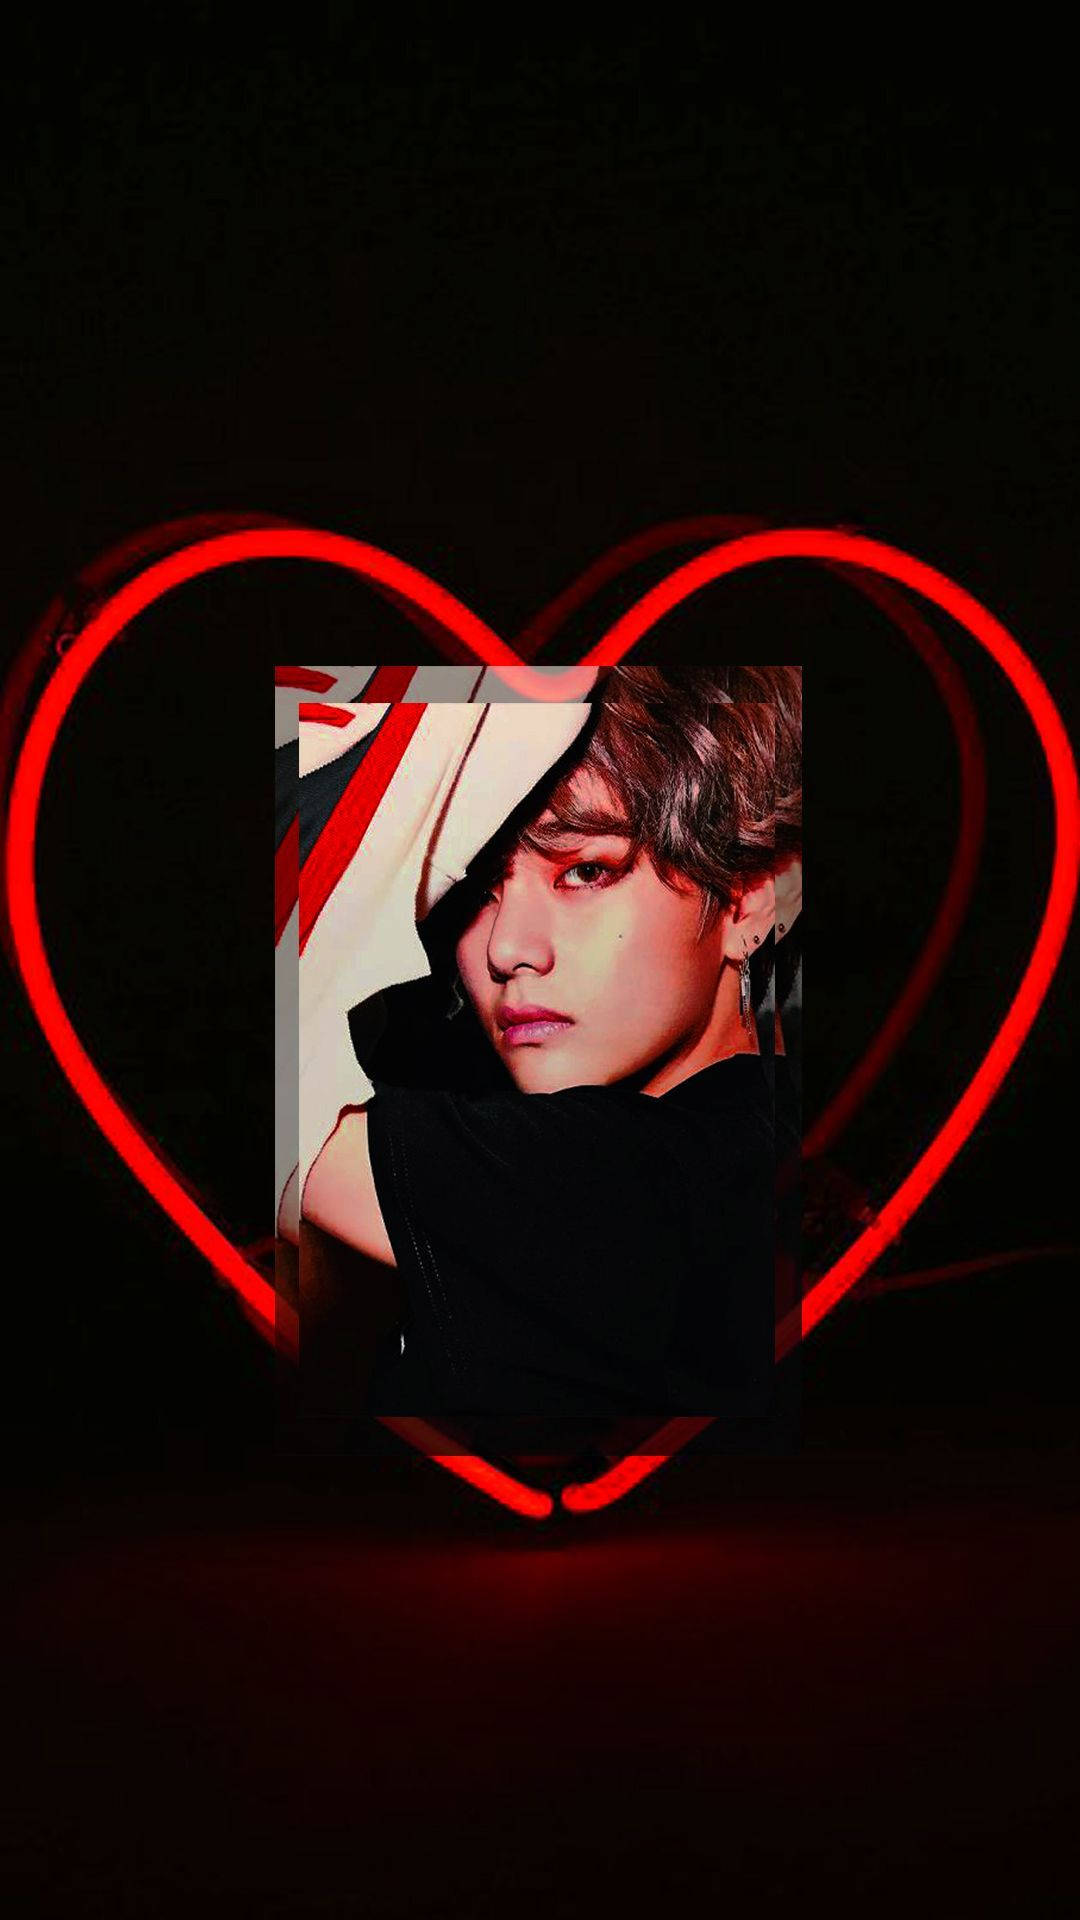 BTS Member V Red Heart Aesthetic Wallpaper